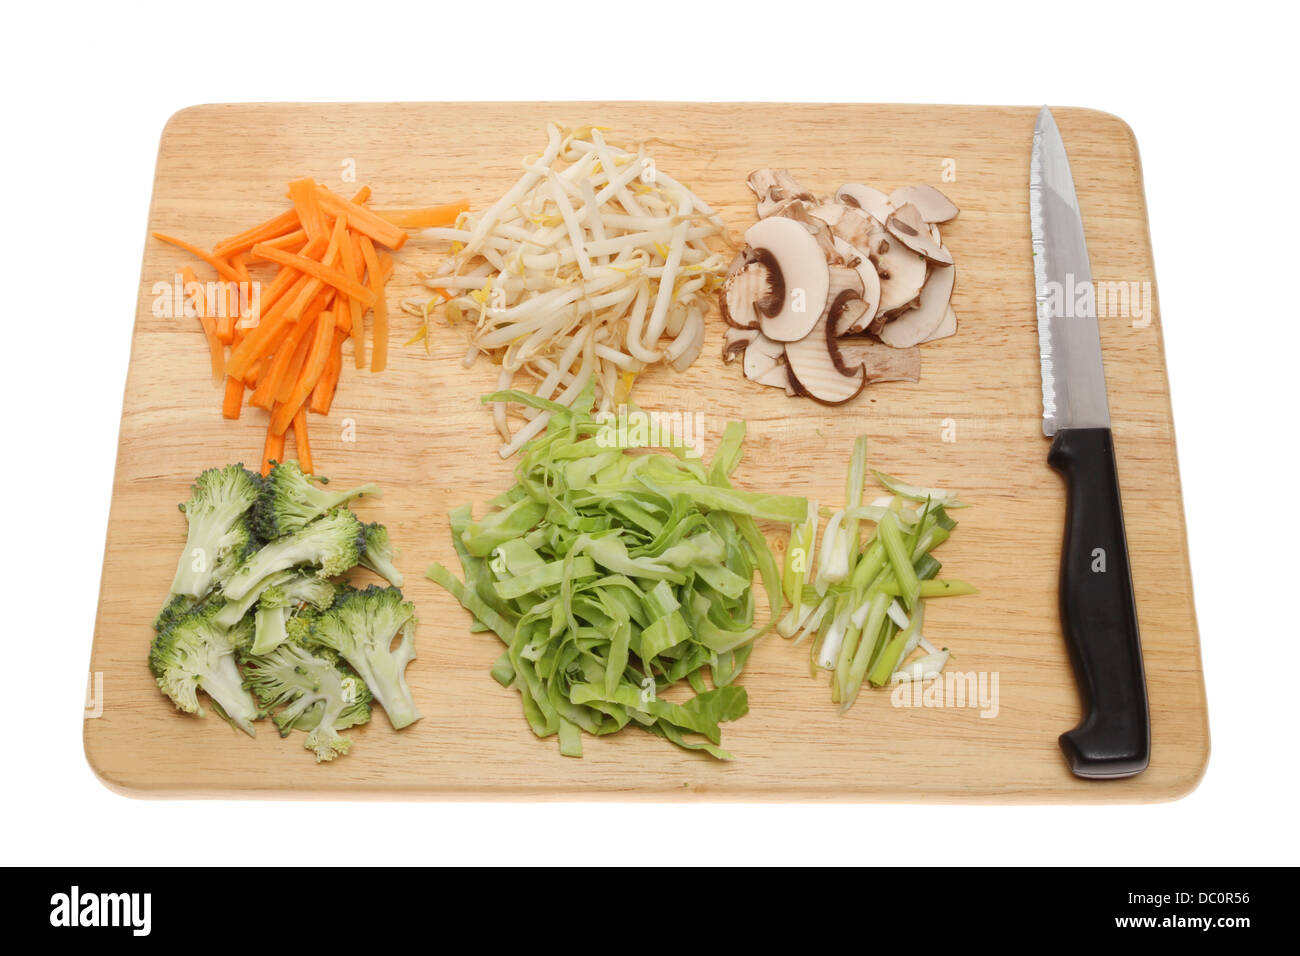 Sauté de légumes ingrédients sur une planche en bois avec un couteau isolés contre white Banque D'Images